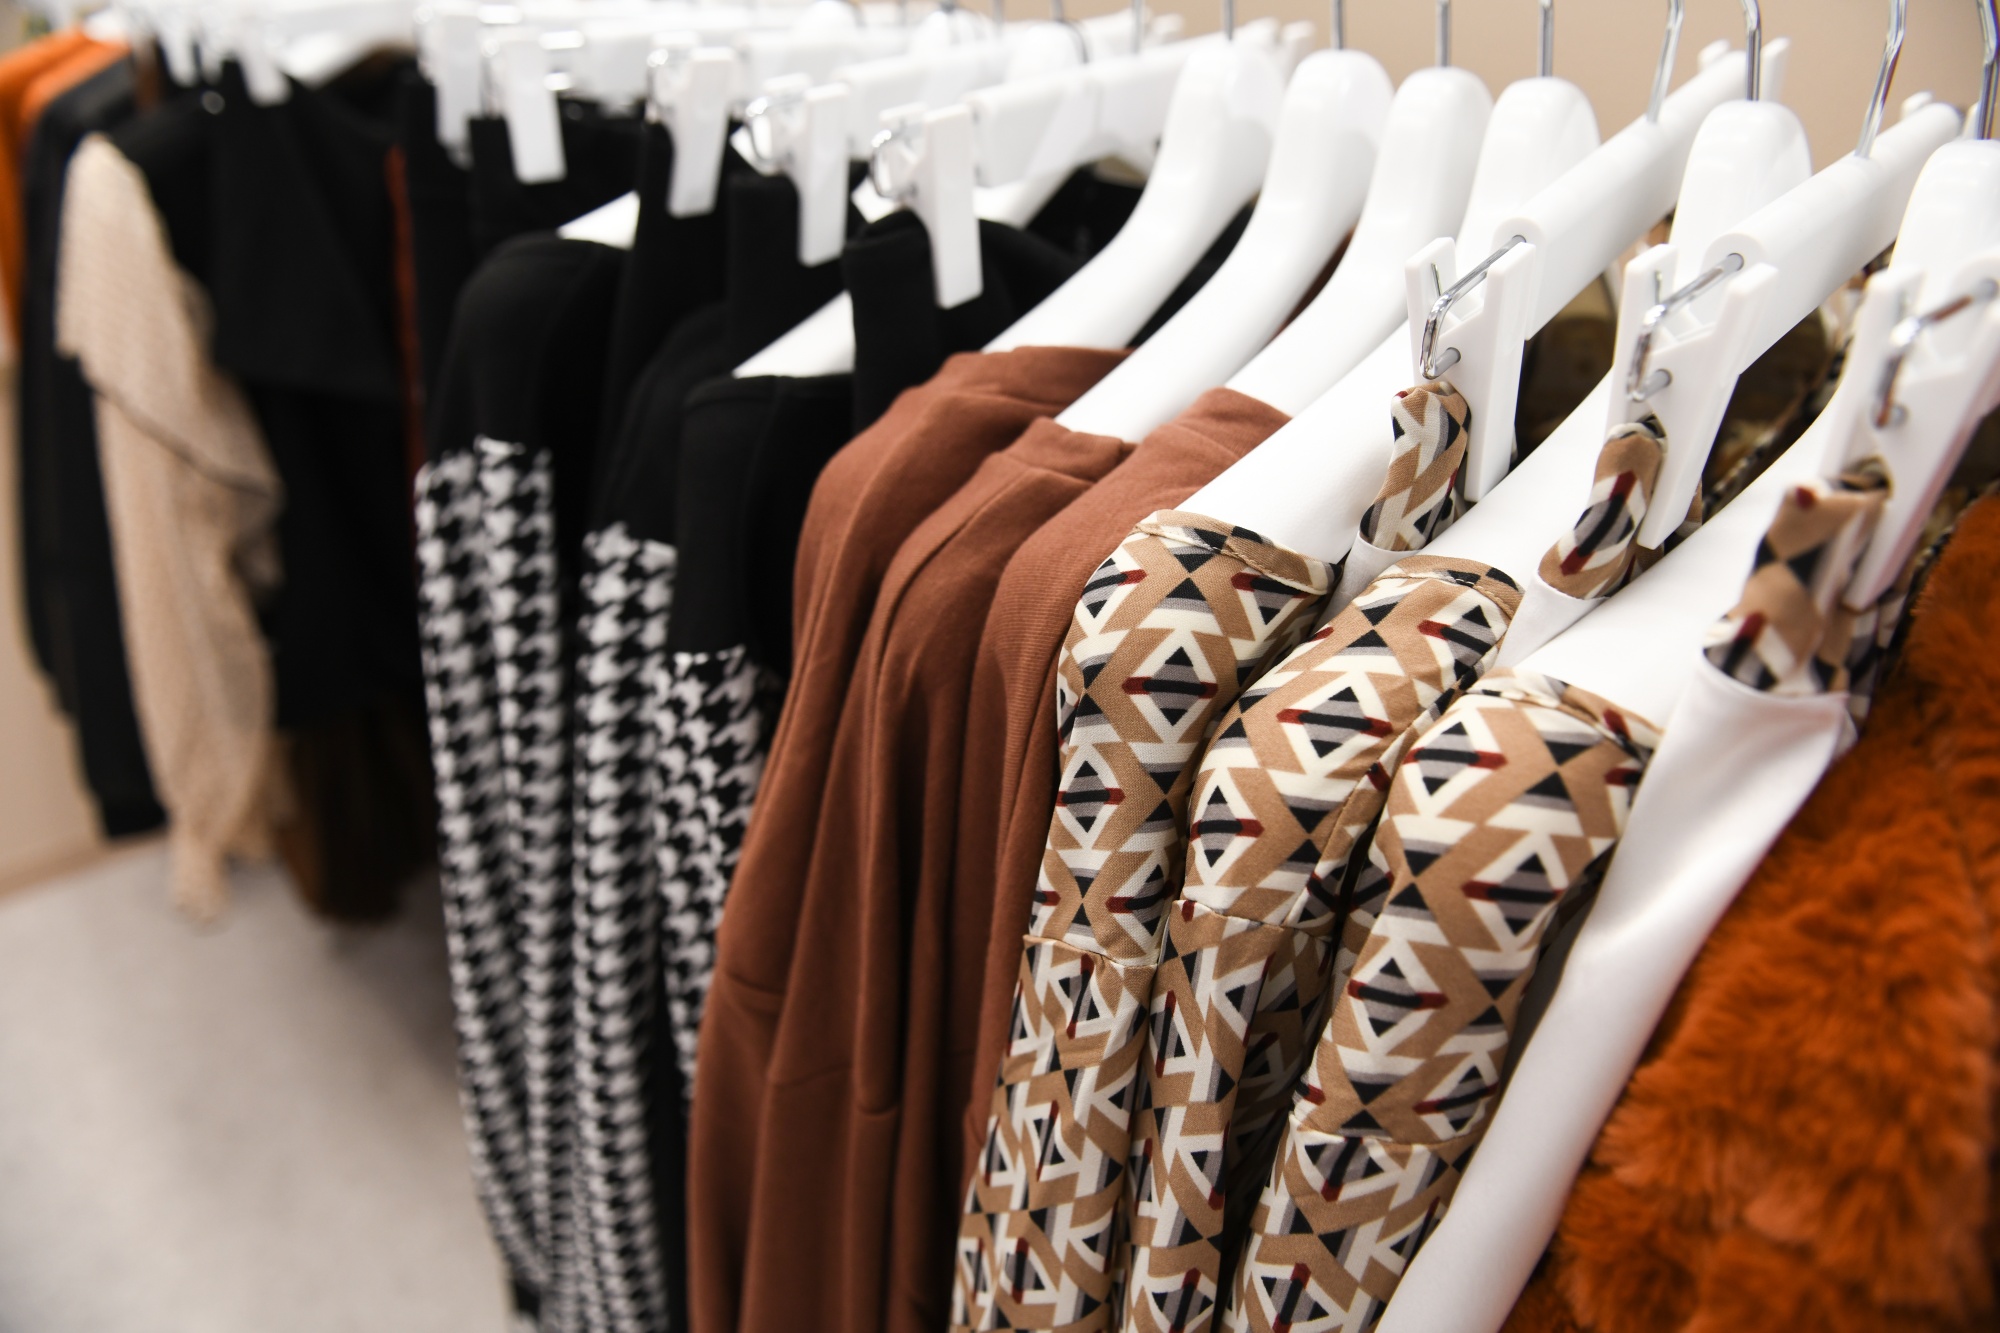 Australian-based retailer Cotton On opened their Fashion Fair